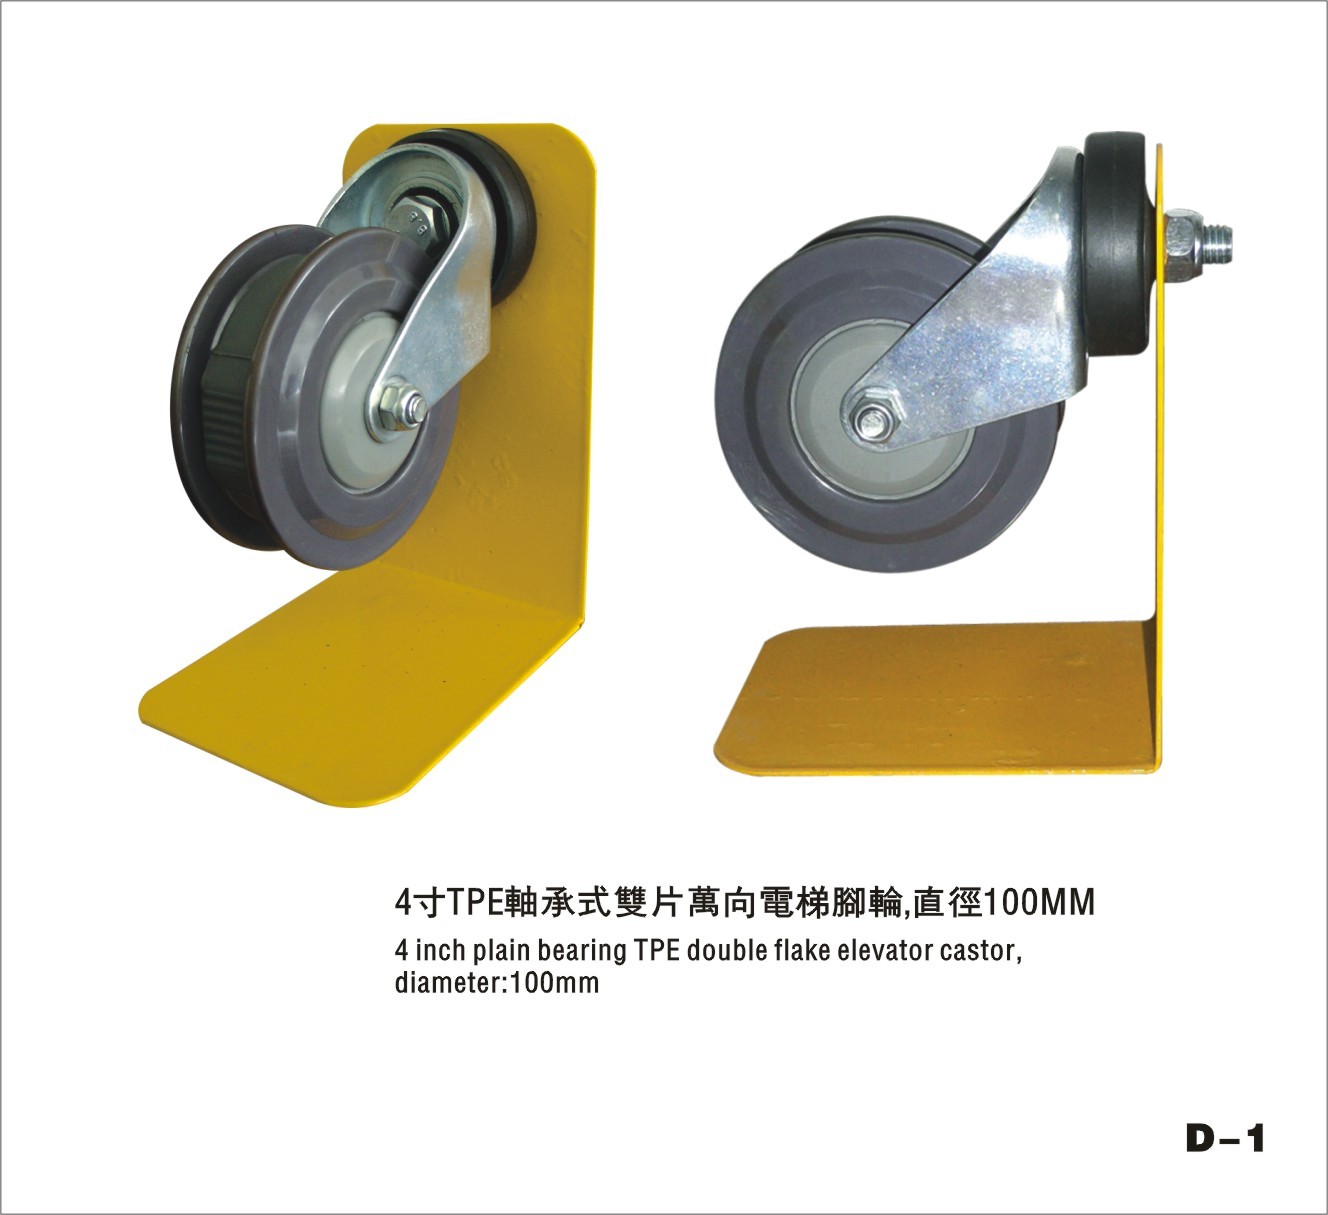 TPE Double Flakes Swivel Elevator Trolley Plain Bearing Castor Wheels , Diameter 100mm